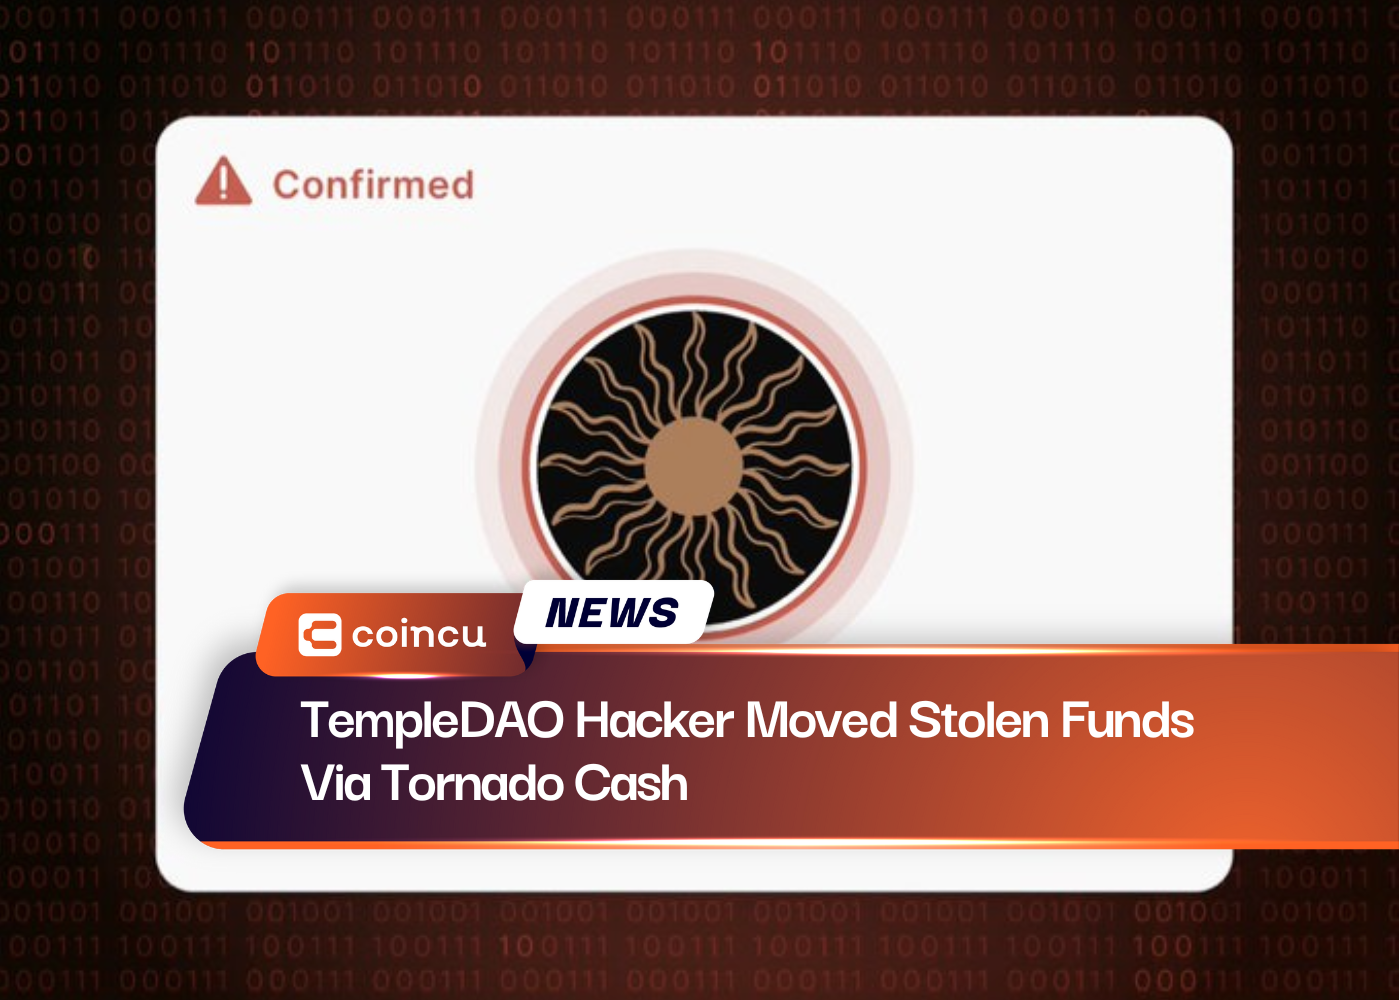 TempleDAO Hacker Moved Stolen Funds Via Tornado Cash